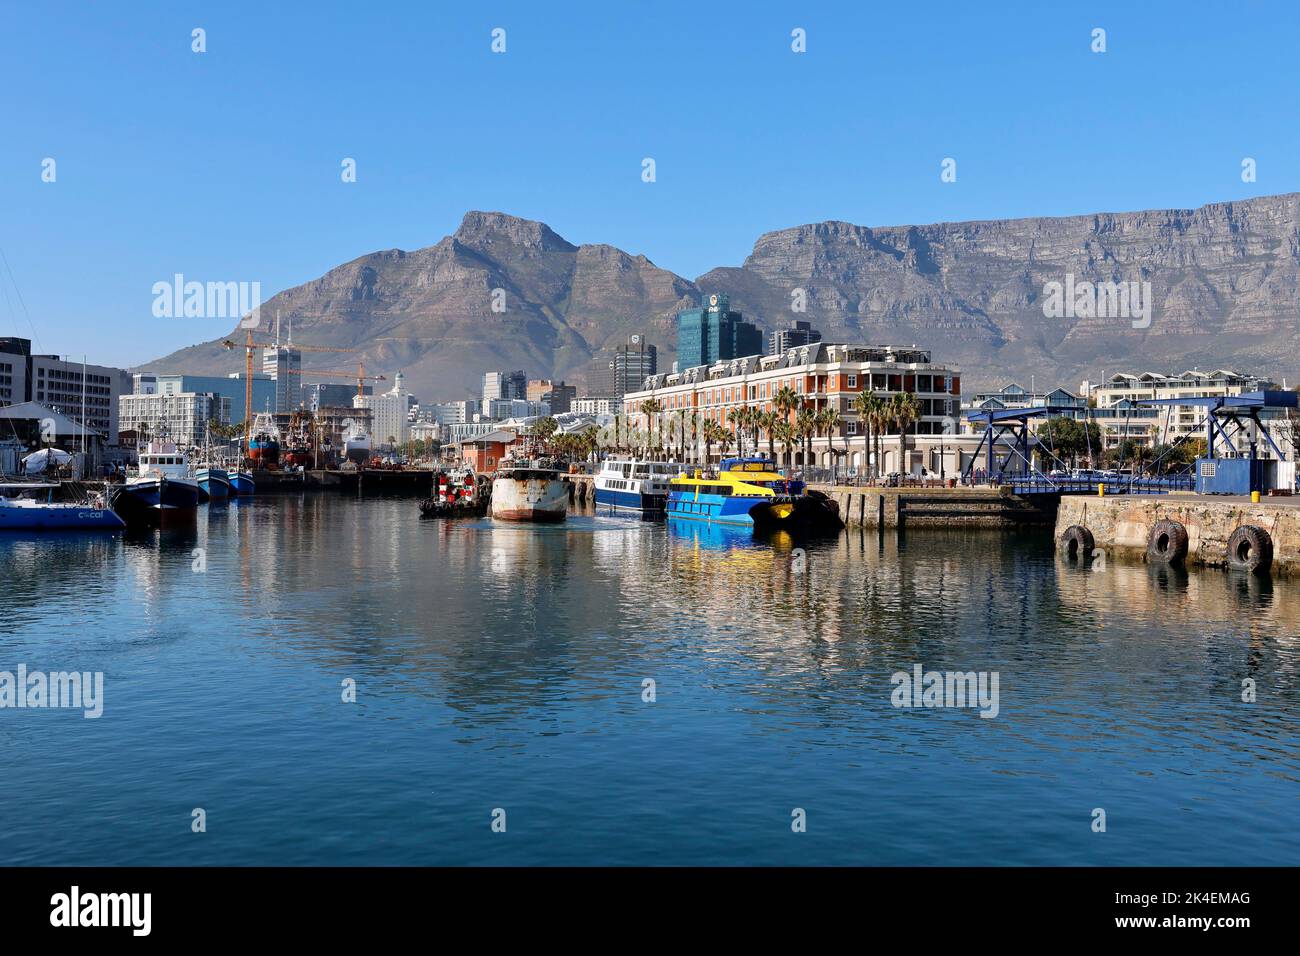 Le front de mer V&A à Cape Town, Afrique du Sud. Banque D'Images